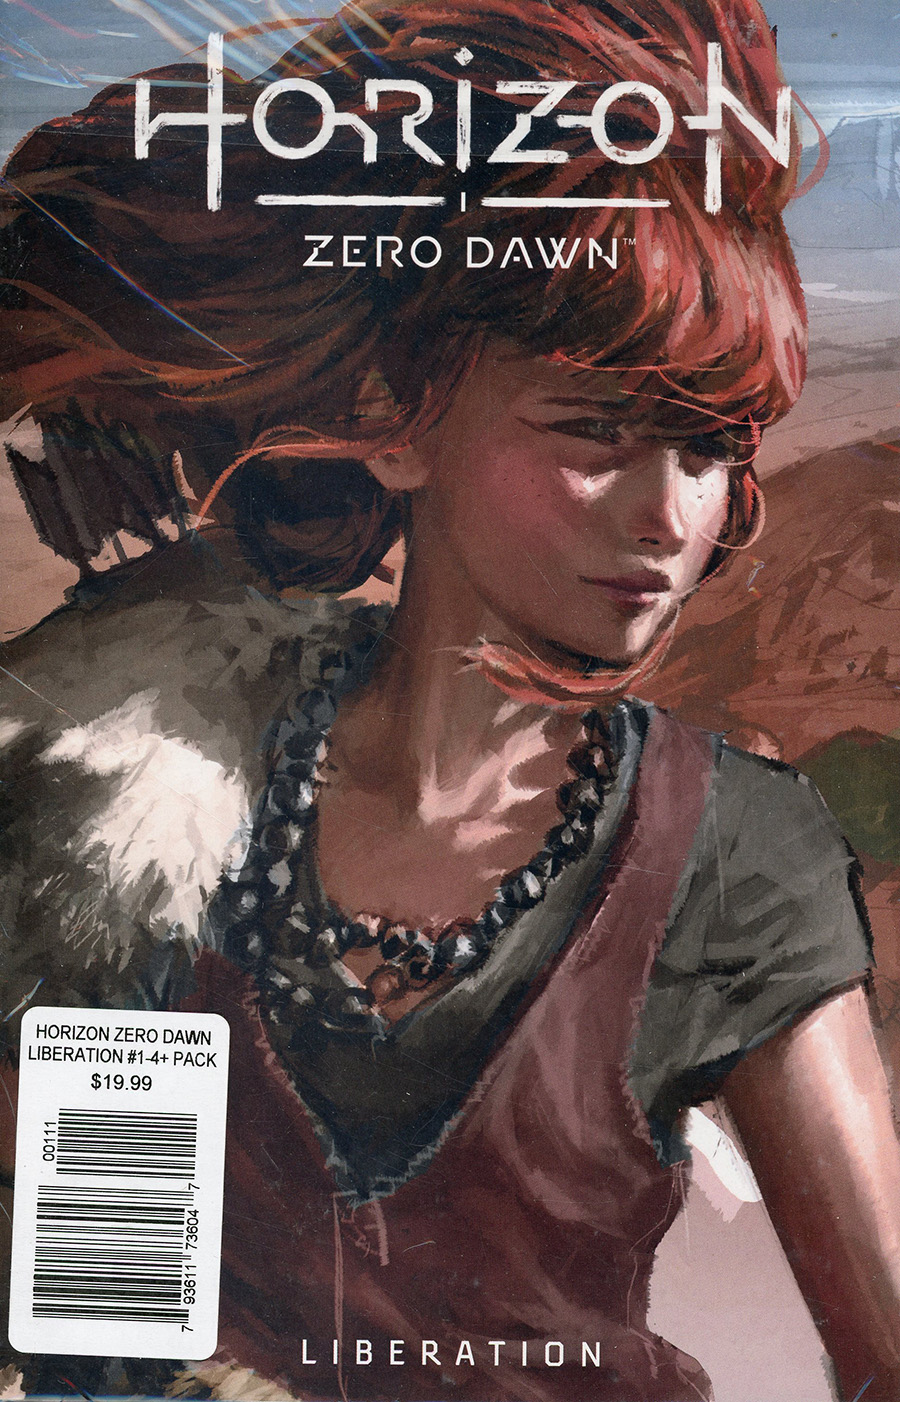 Horizon Zero Dawn Liberation #1-4 Game Art Pack